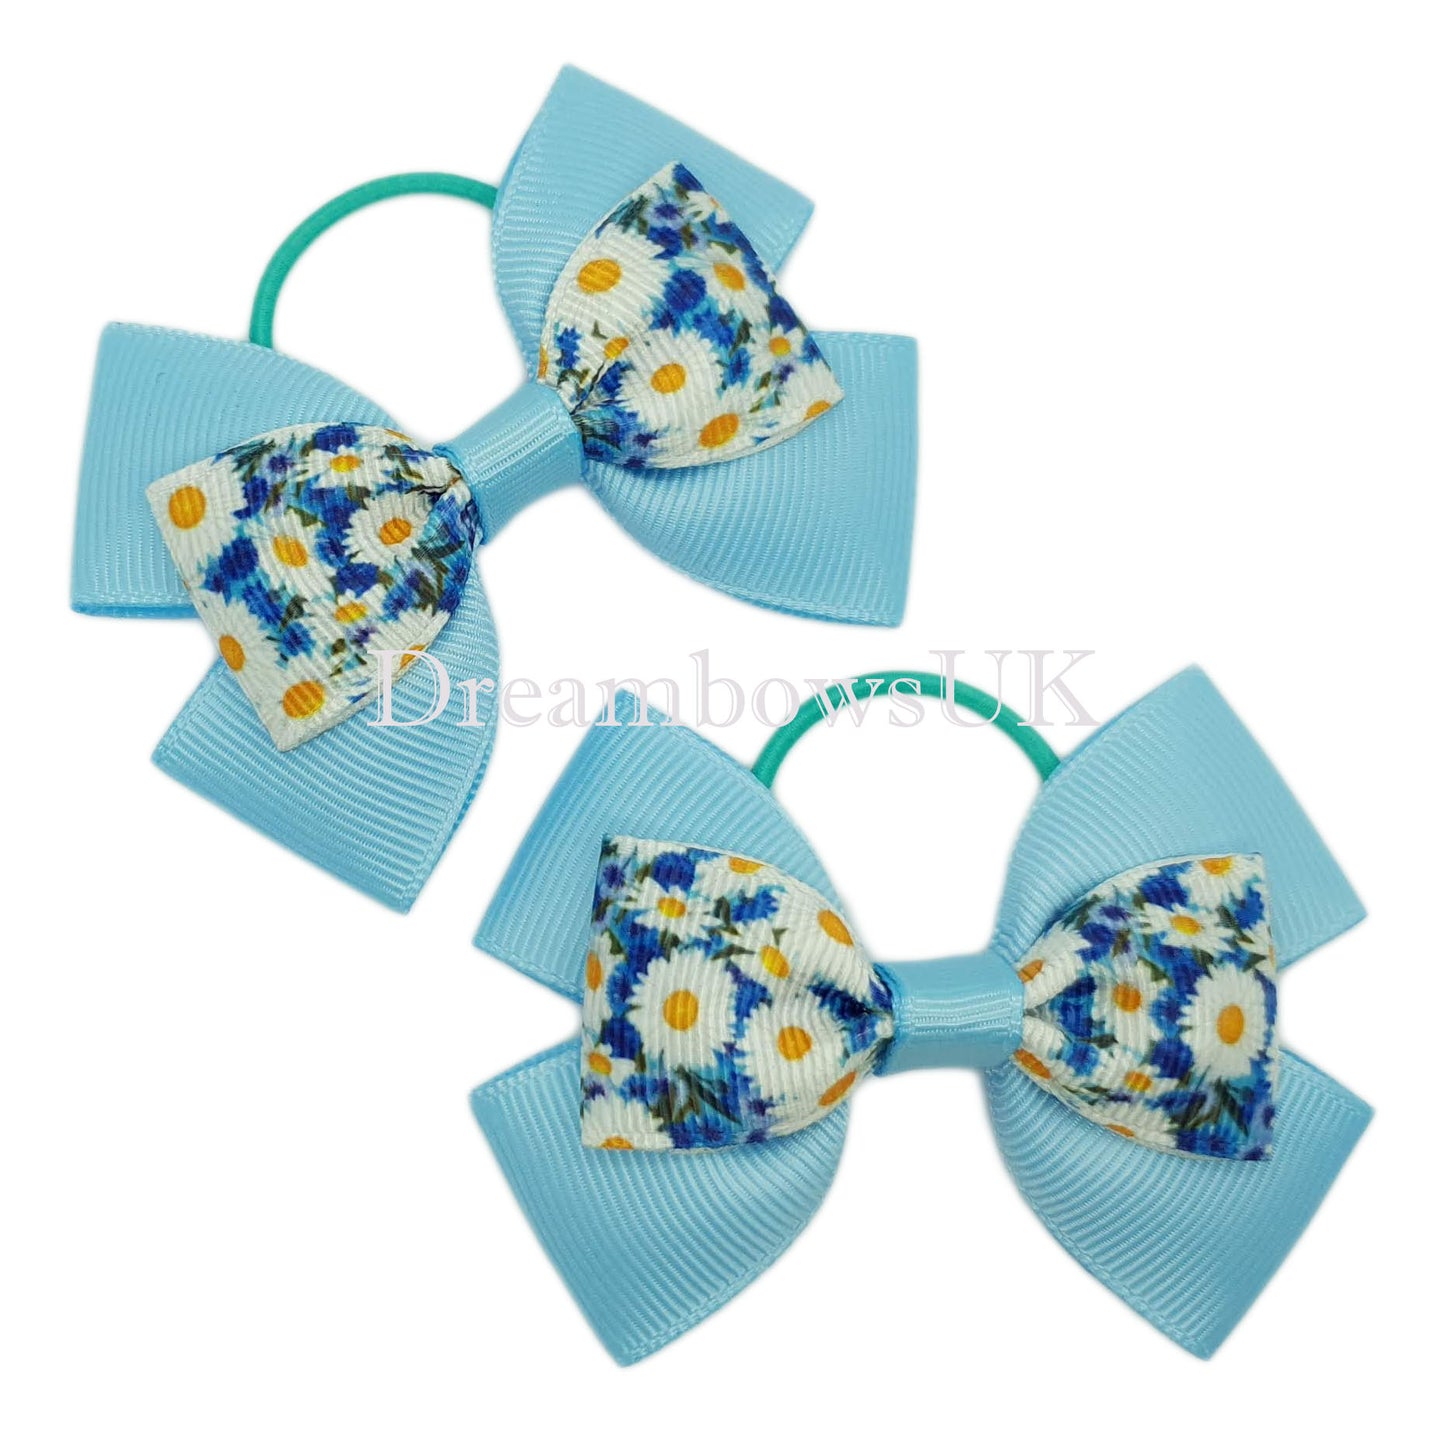 Baby blue floral hair bows, thin hair bobbles, children's hair accessories